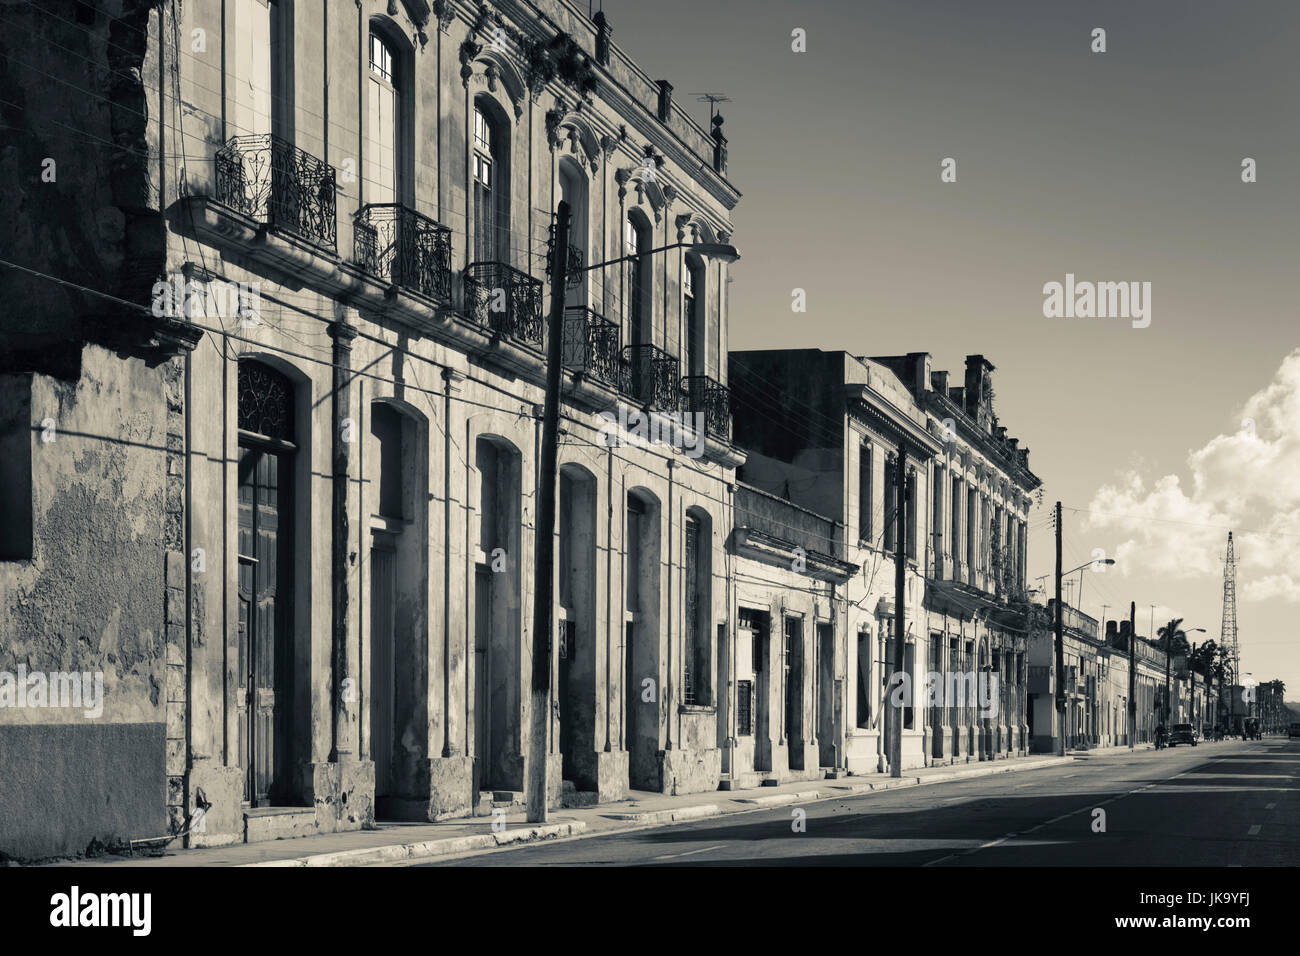 Cuba, Matanzas Province, Cardenas, buildings along Avenida Cespedes Stock Photo